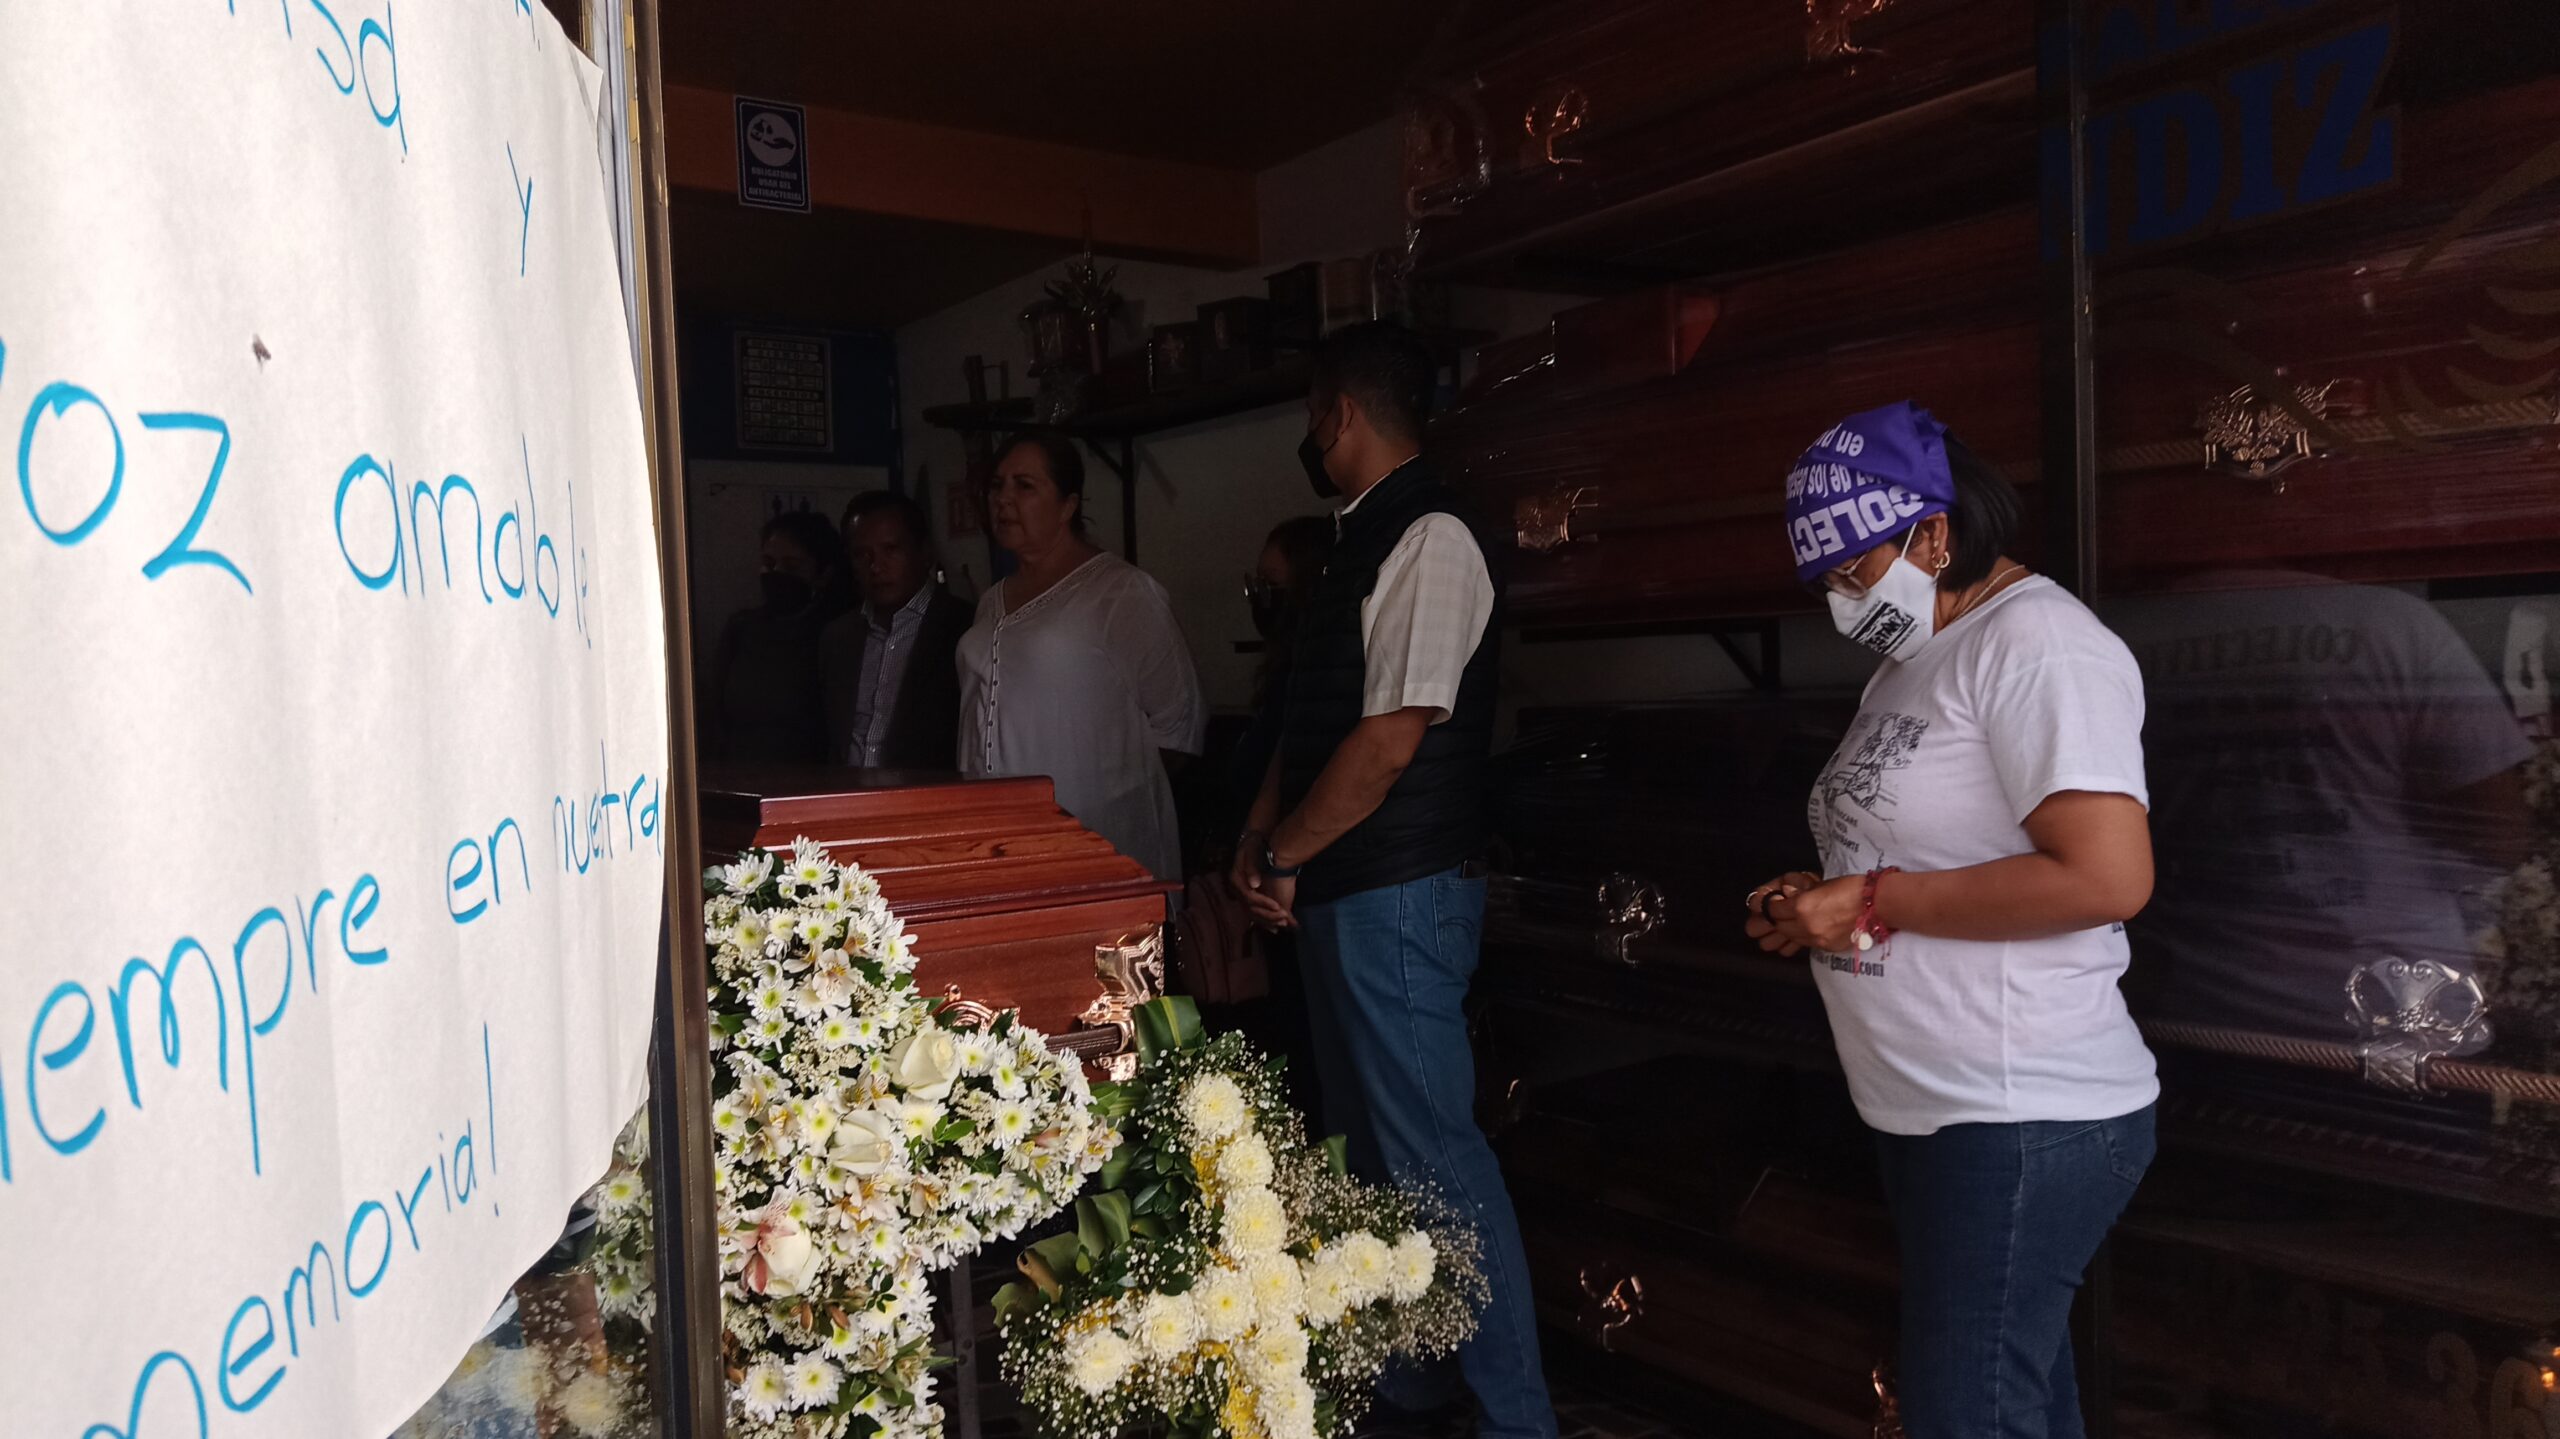 Al sur de la ciudad, antes de llevar el cuerpo a Veracruz, compañeras y familiares realizan un funeral para Esmeralda Gallardo. Fotografía: Guadalupe Juárez.